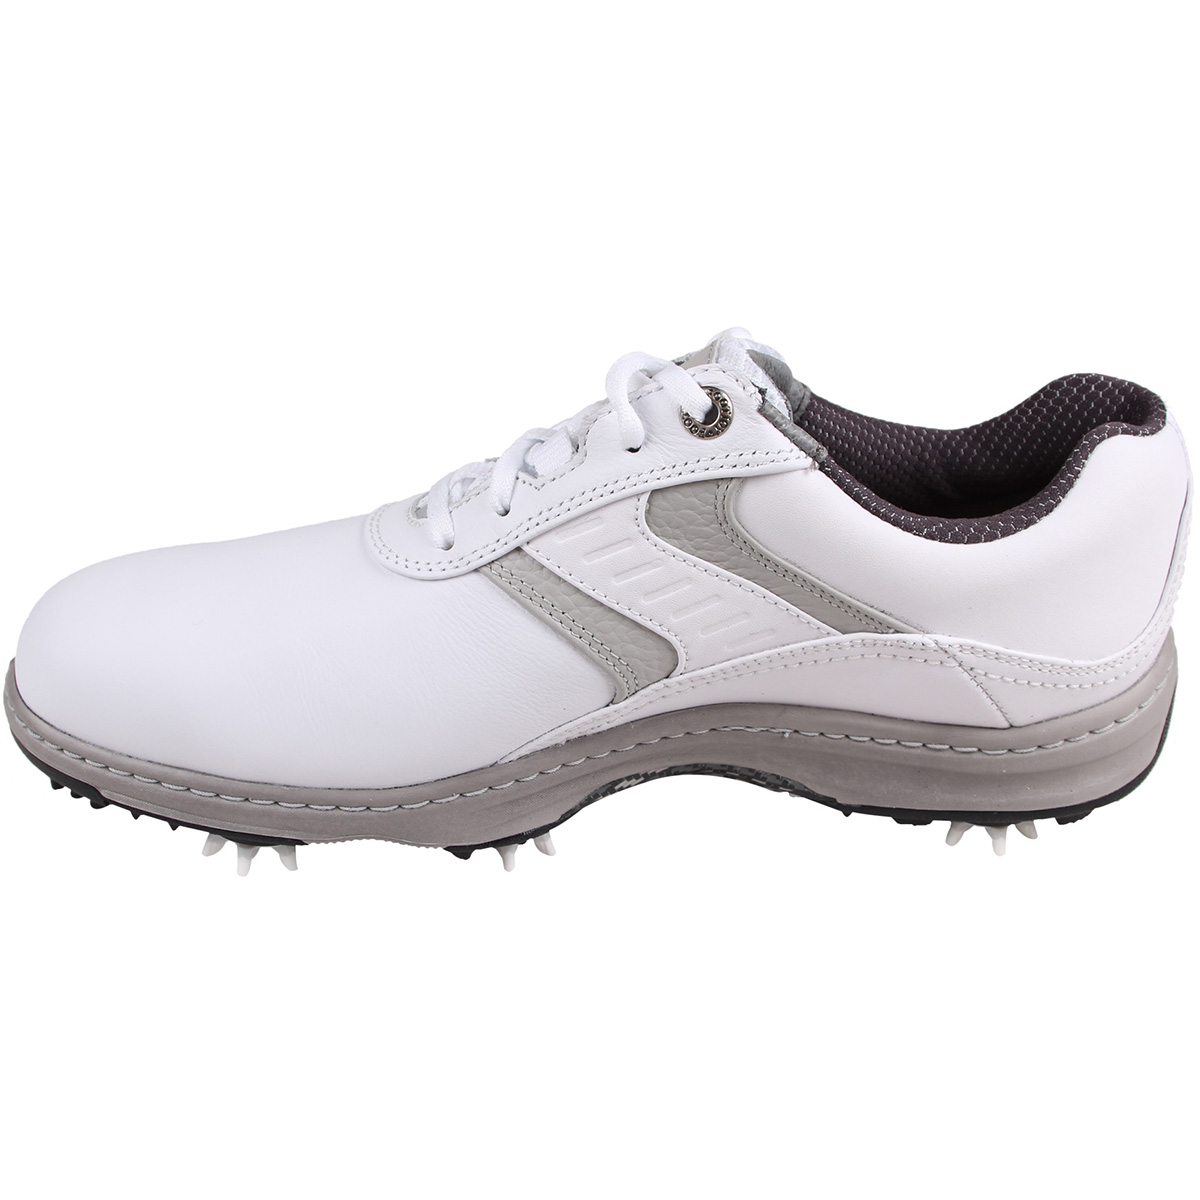 FootJoy Contour Series Shoes | Online Golf